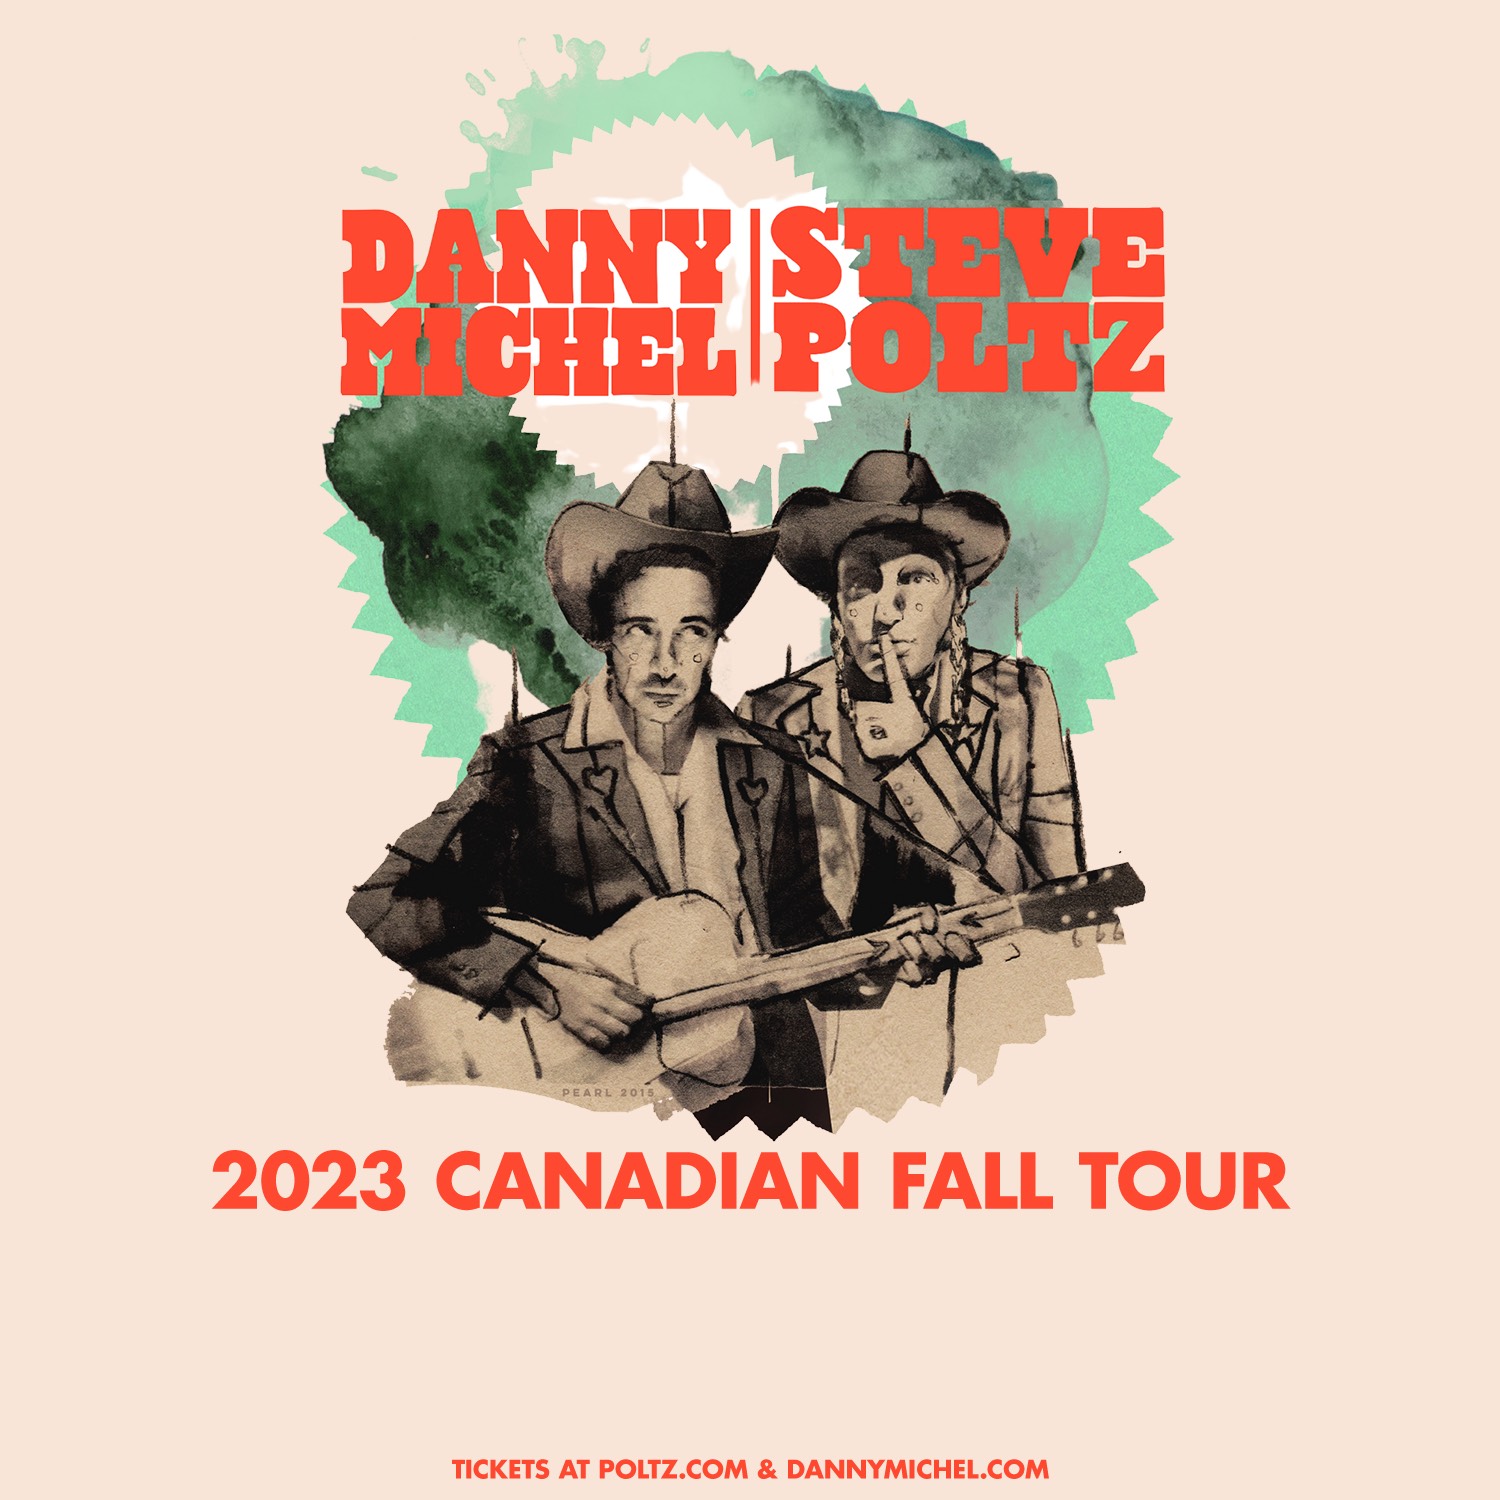 Danny Michel & Steve Poltz tour promotional image